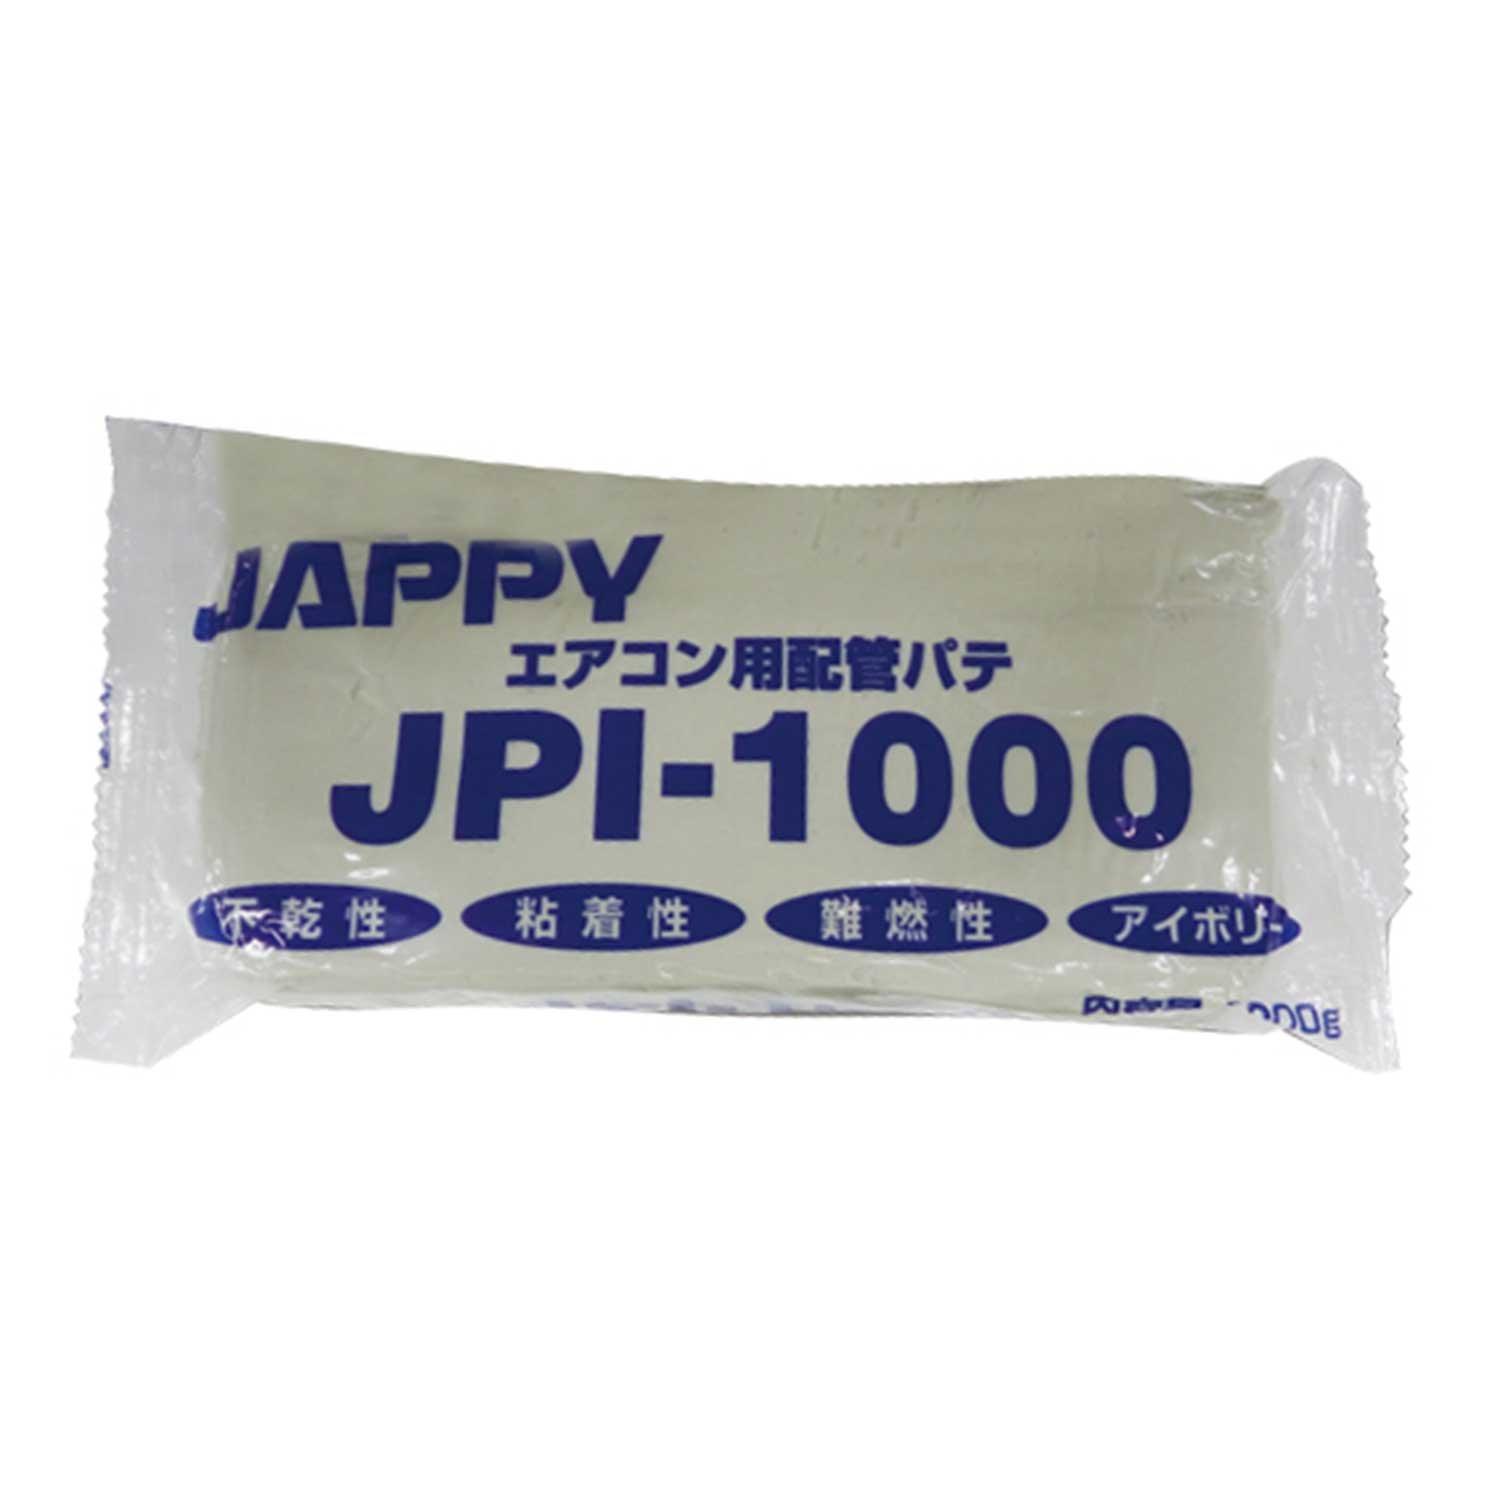 JPI-1000  JAPPY